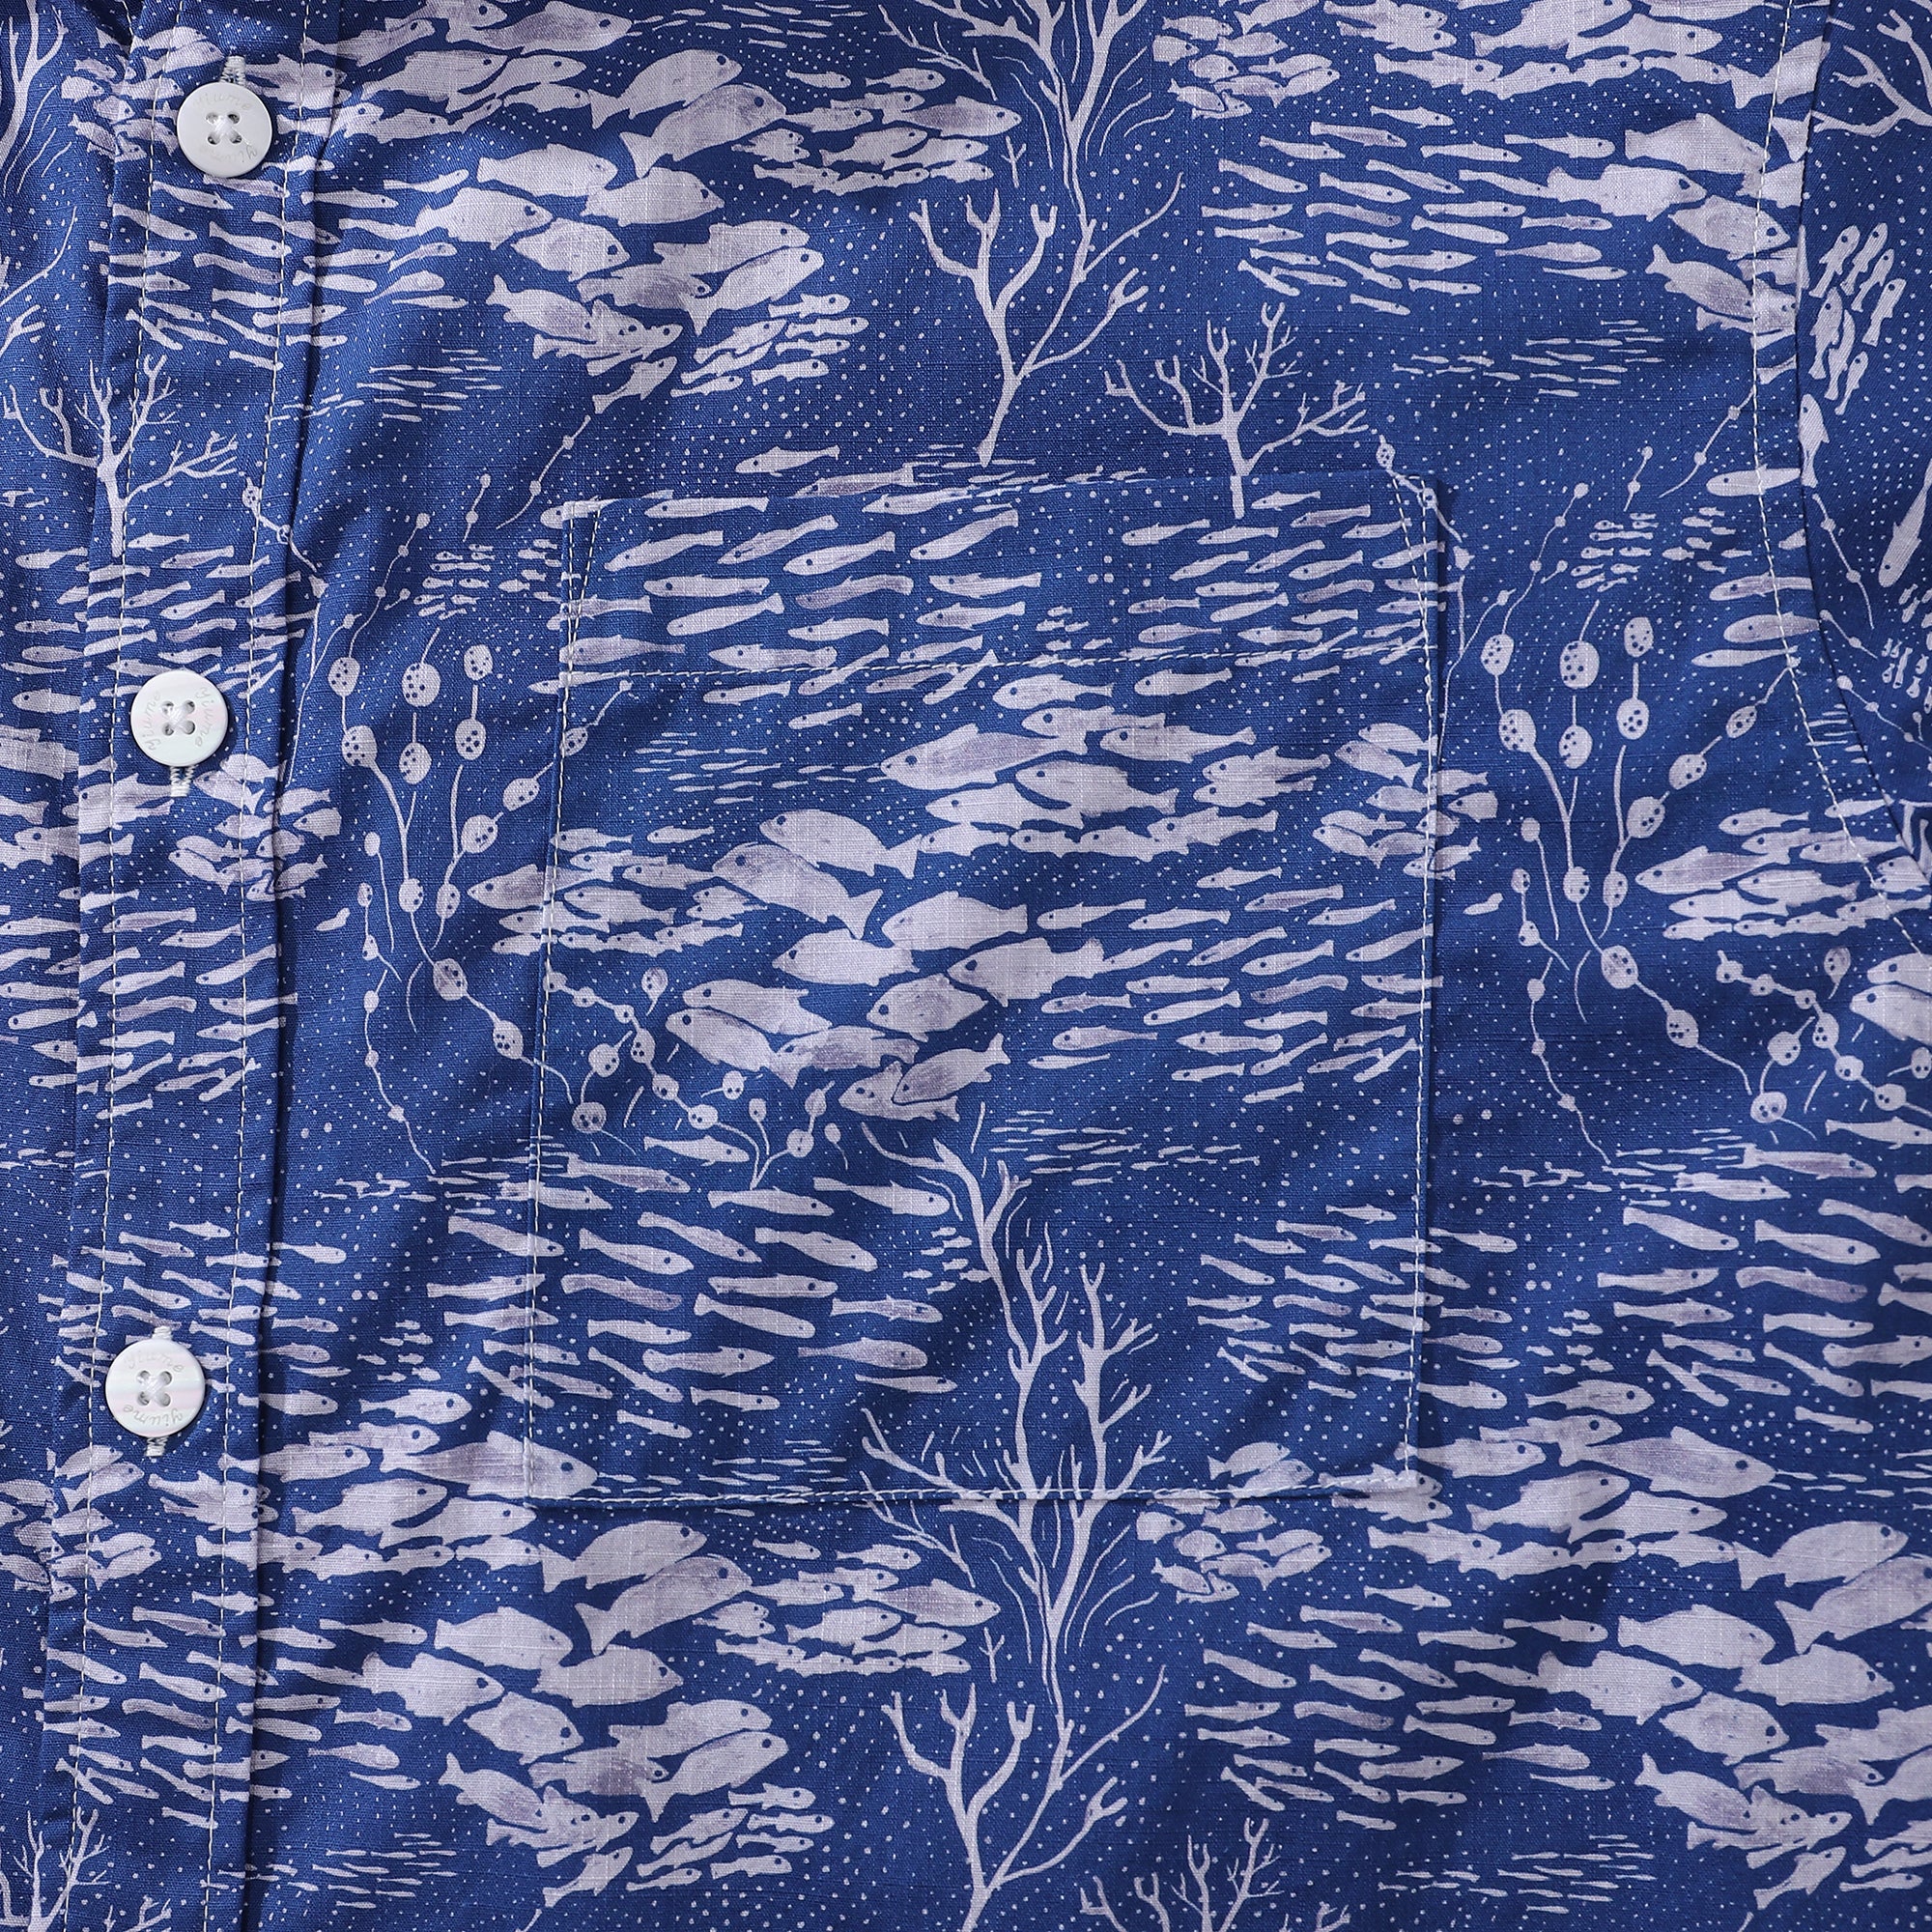 Men's Hawaiian Shirt Shoal Layered Print By Katie O'Shea Design